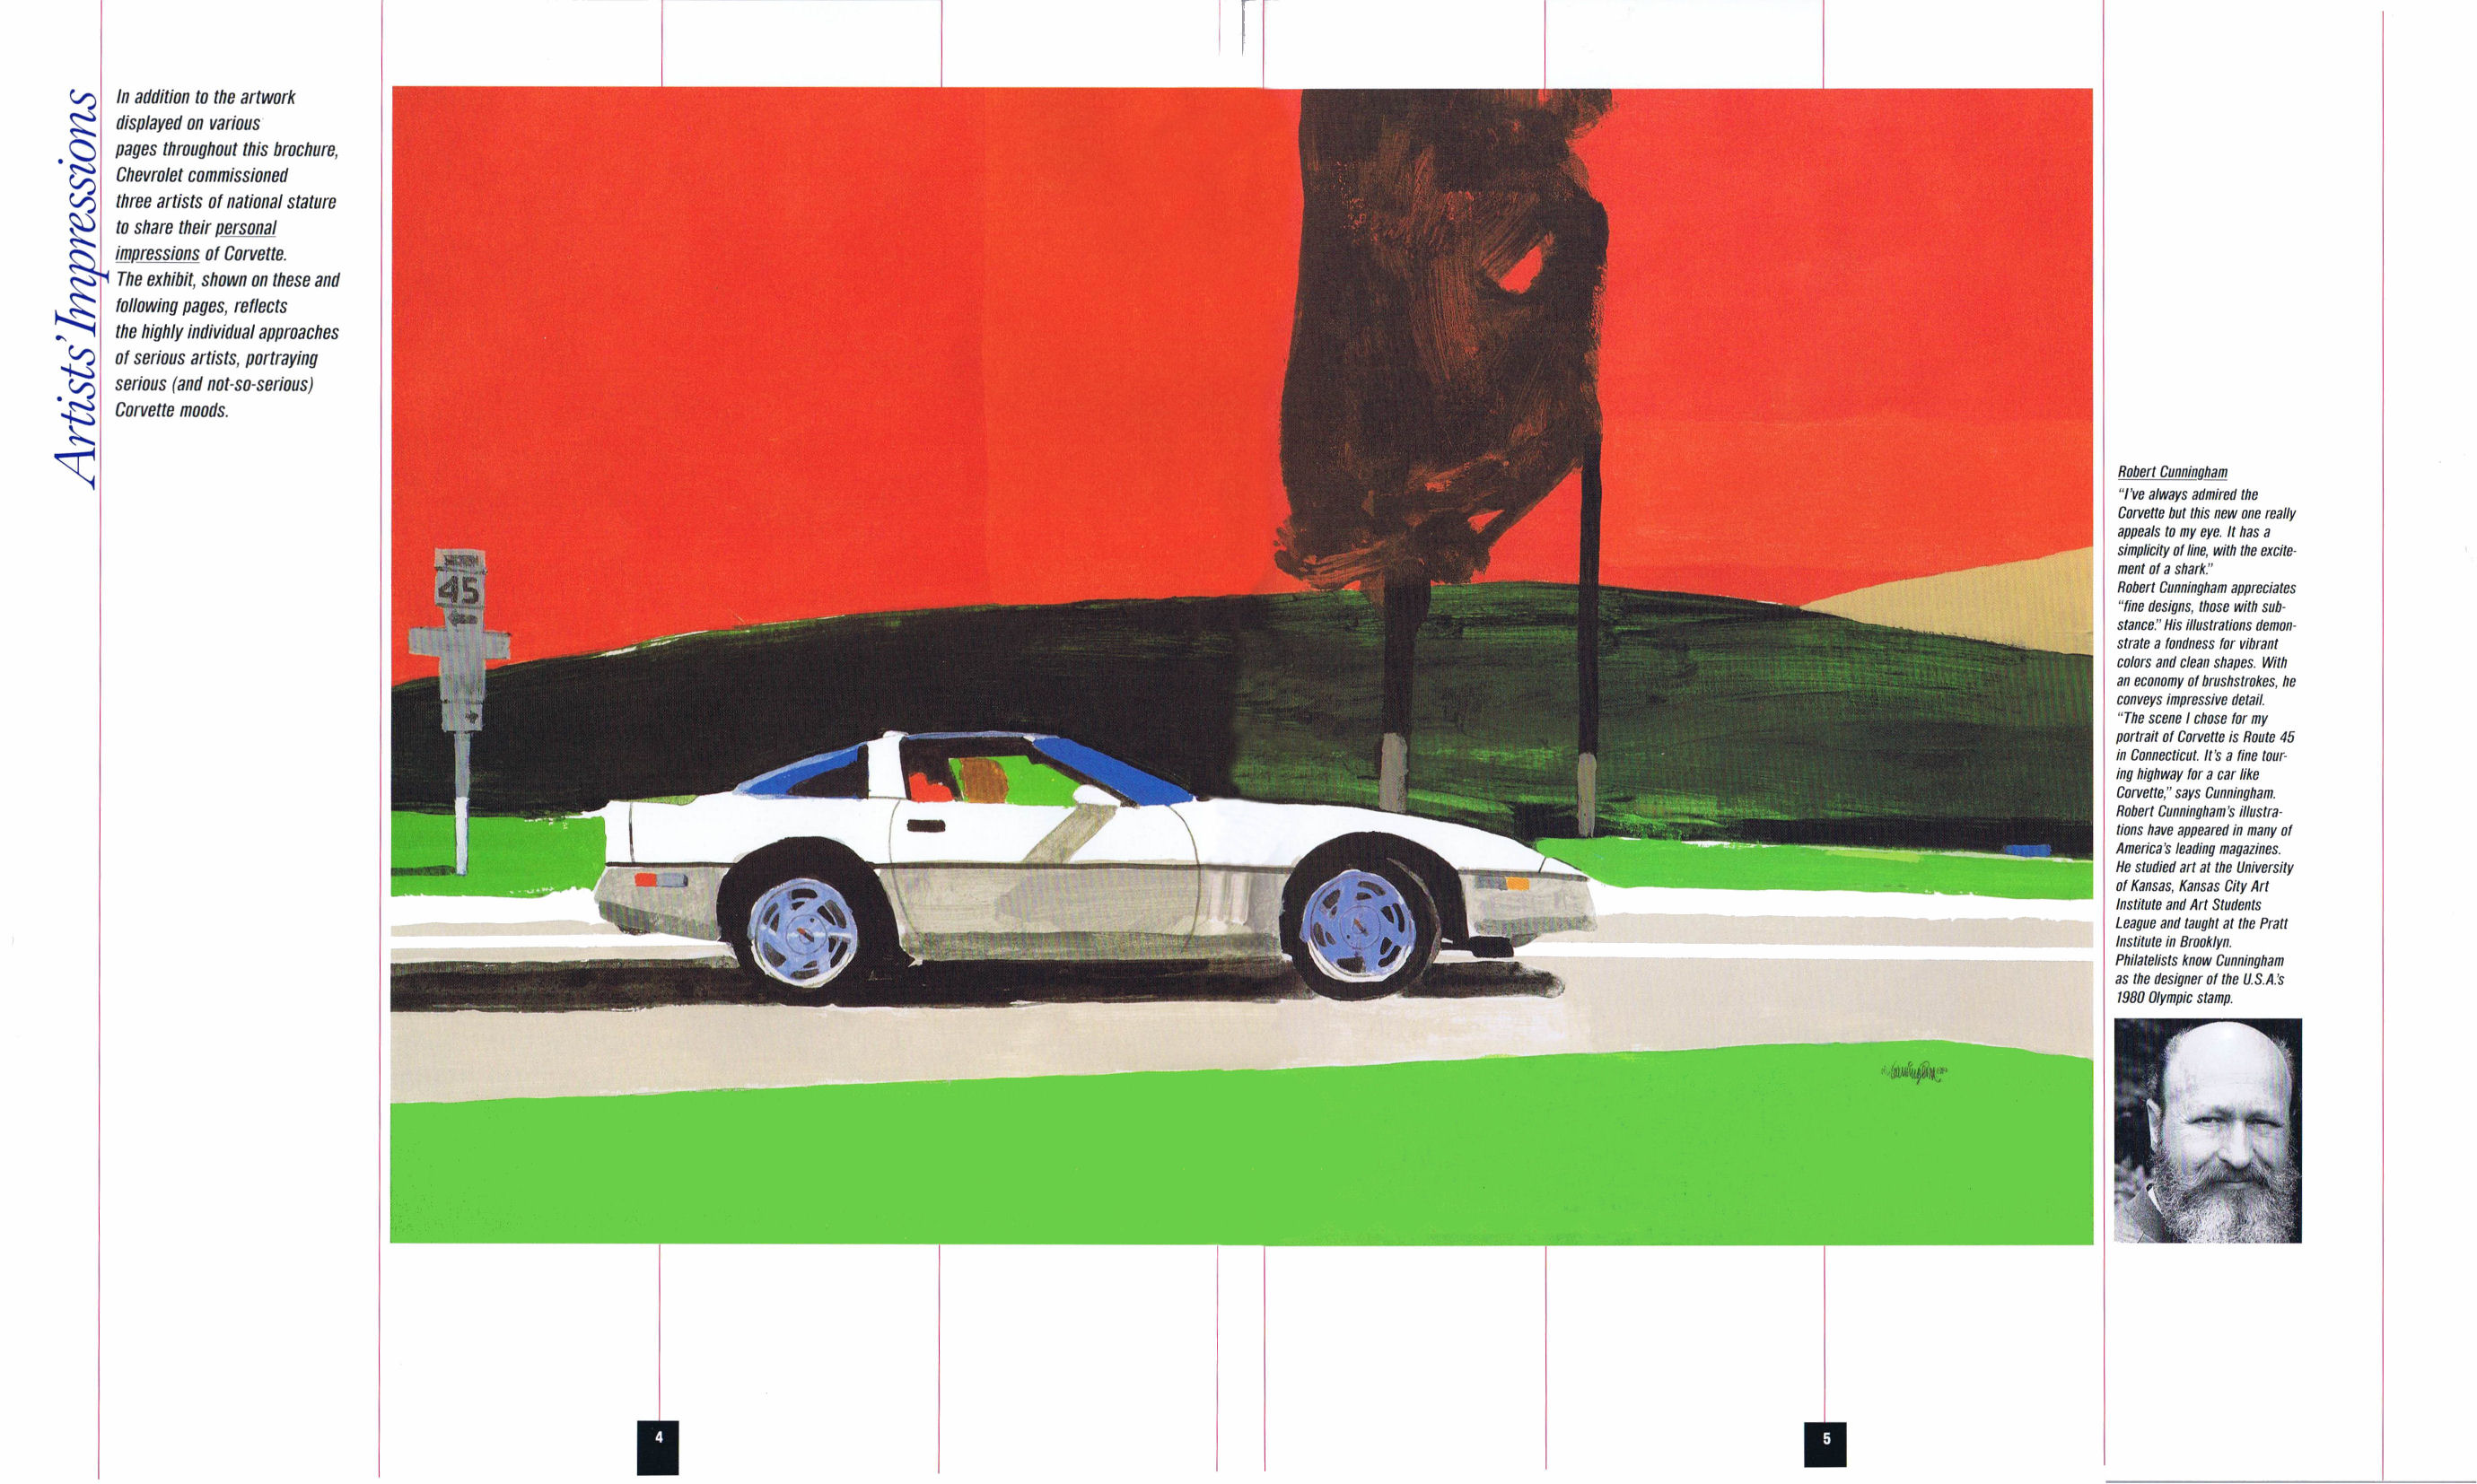 1989_Chevrolet_Corvette-04-05